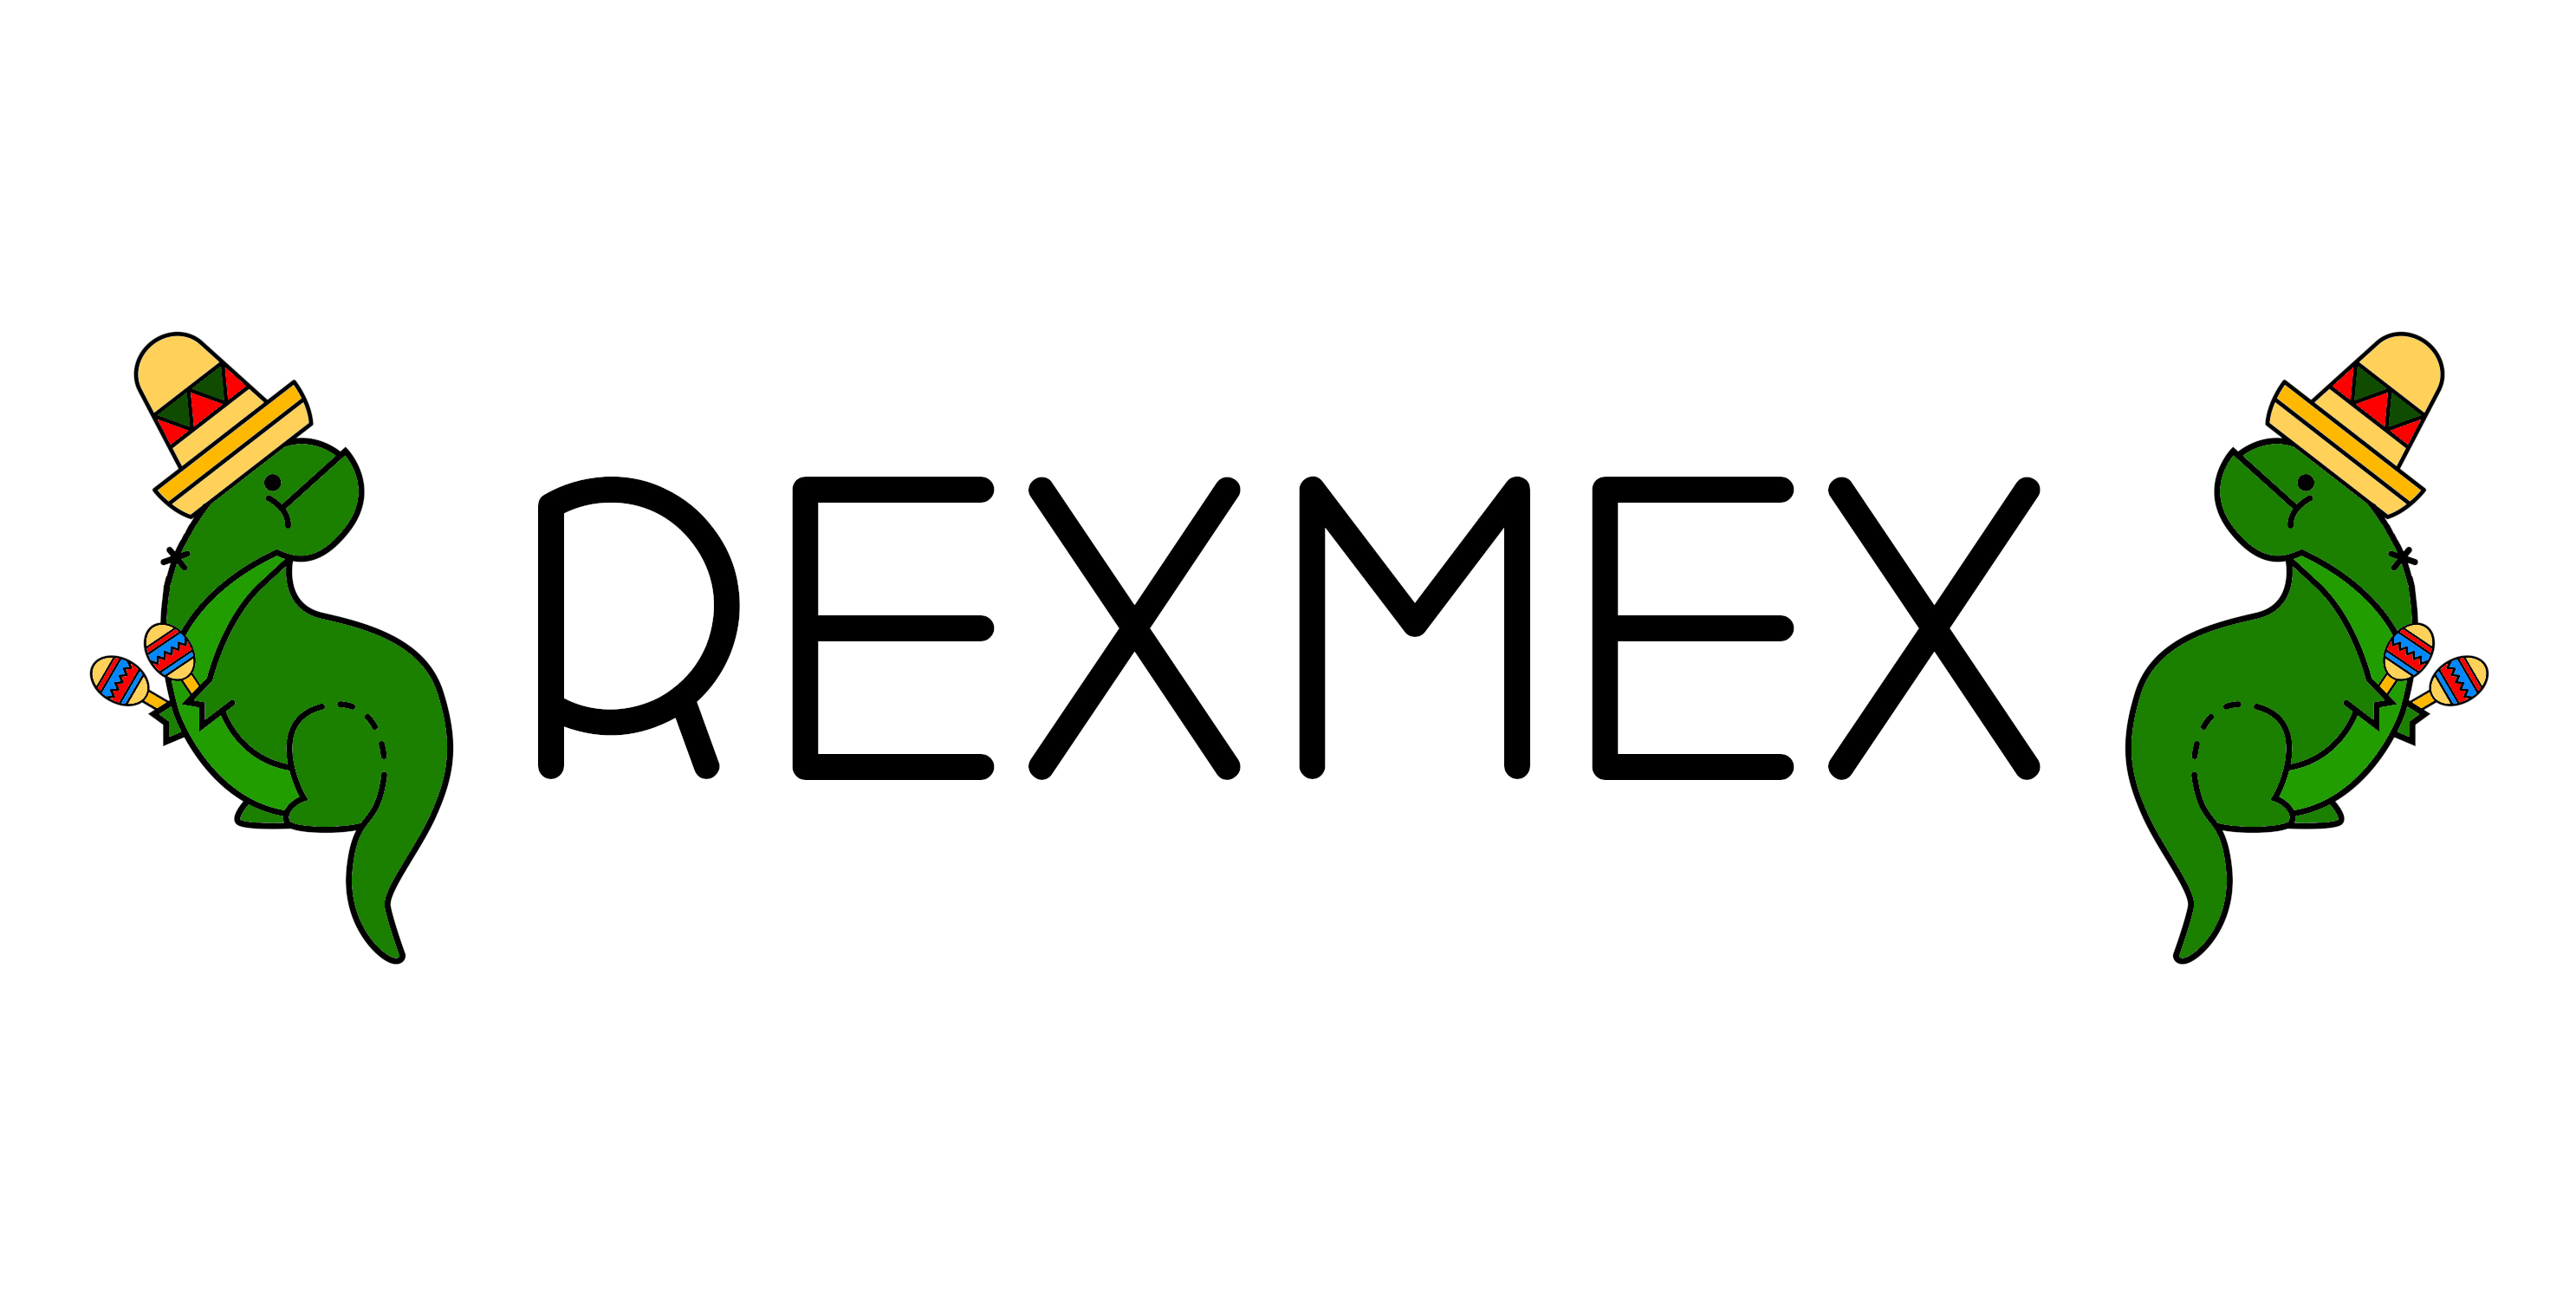 rexmex_logo.jpg